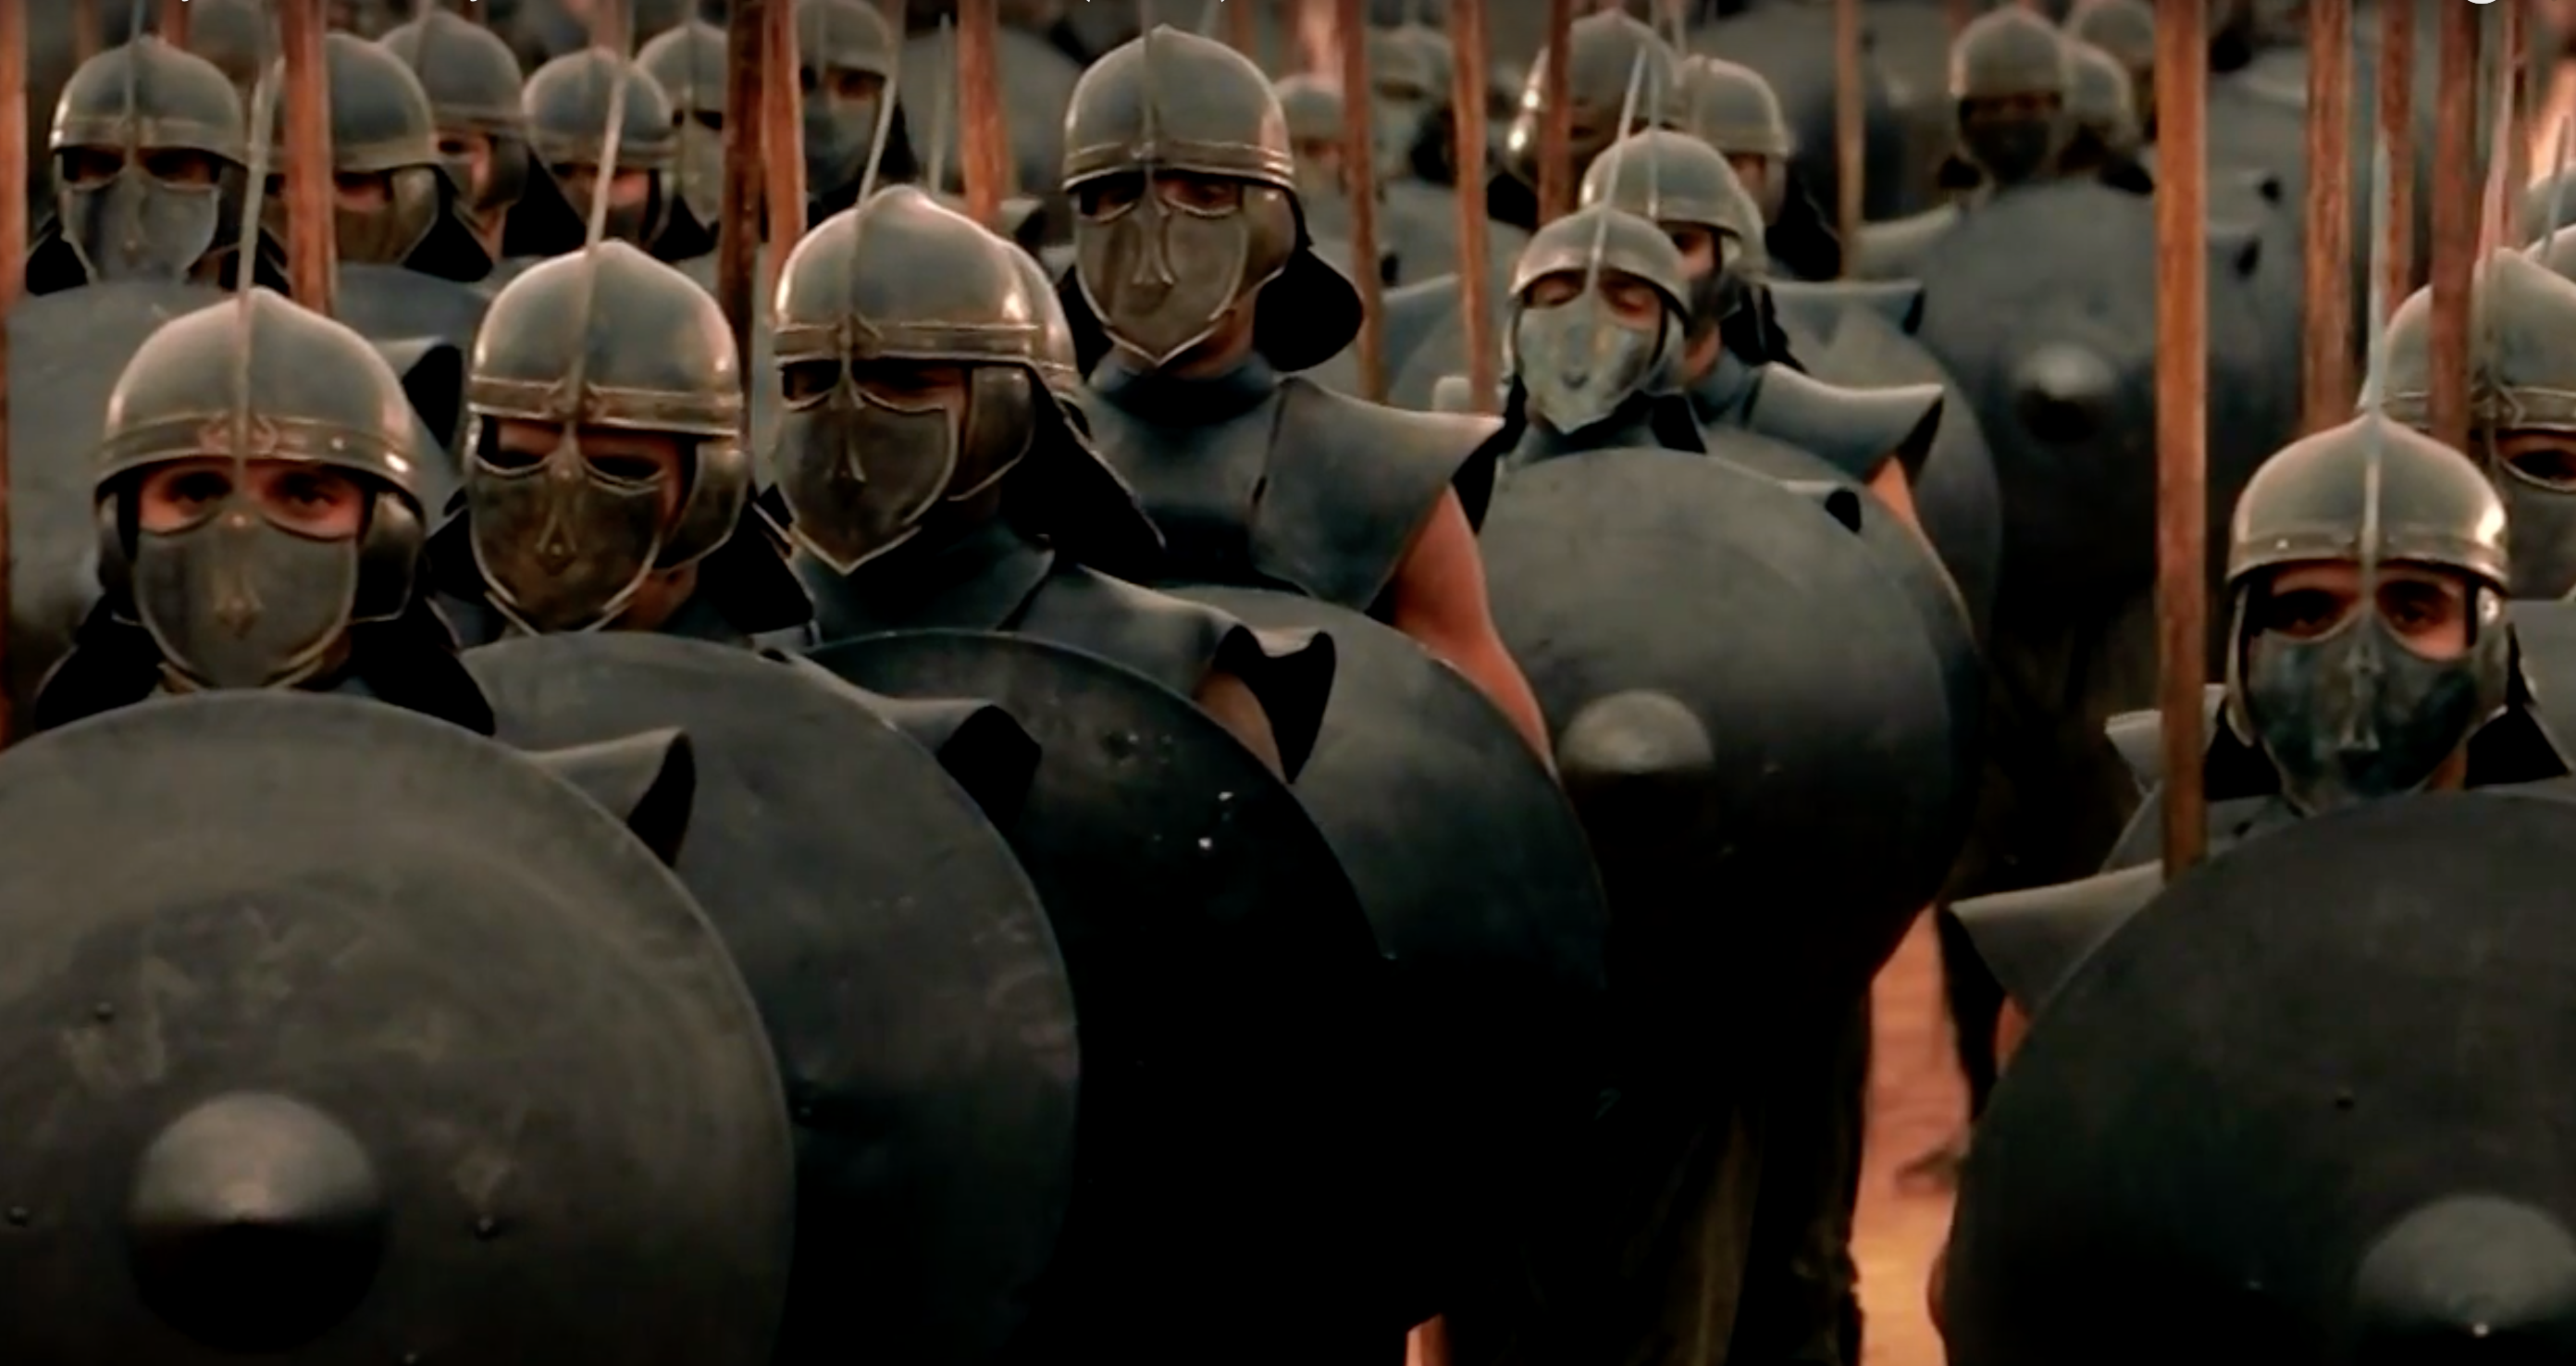 Image de la série "Game of Thrones" avec l'armée des Immaculés. [HBO]